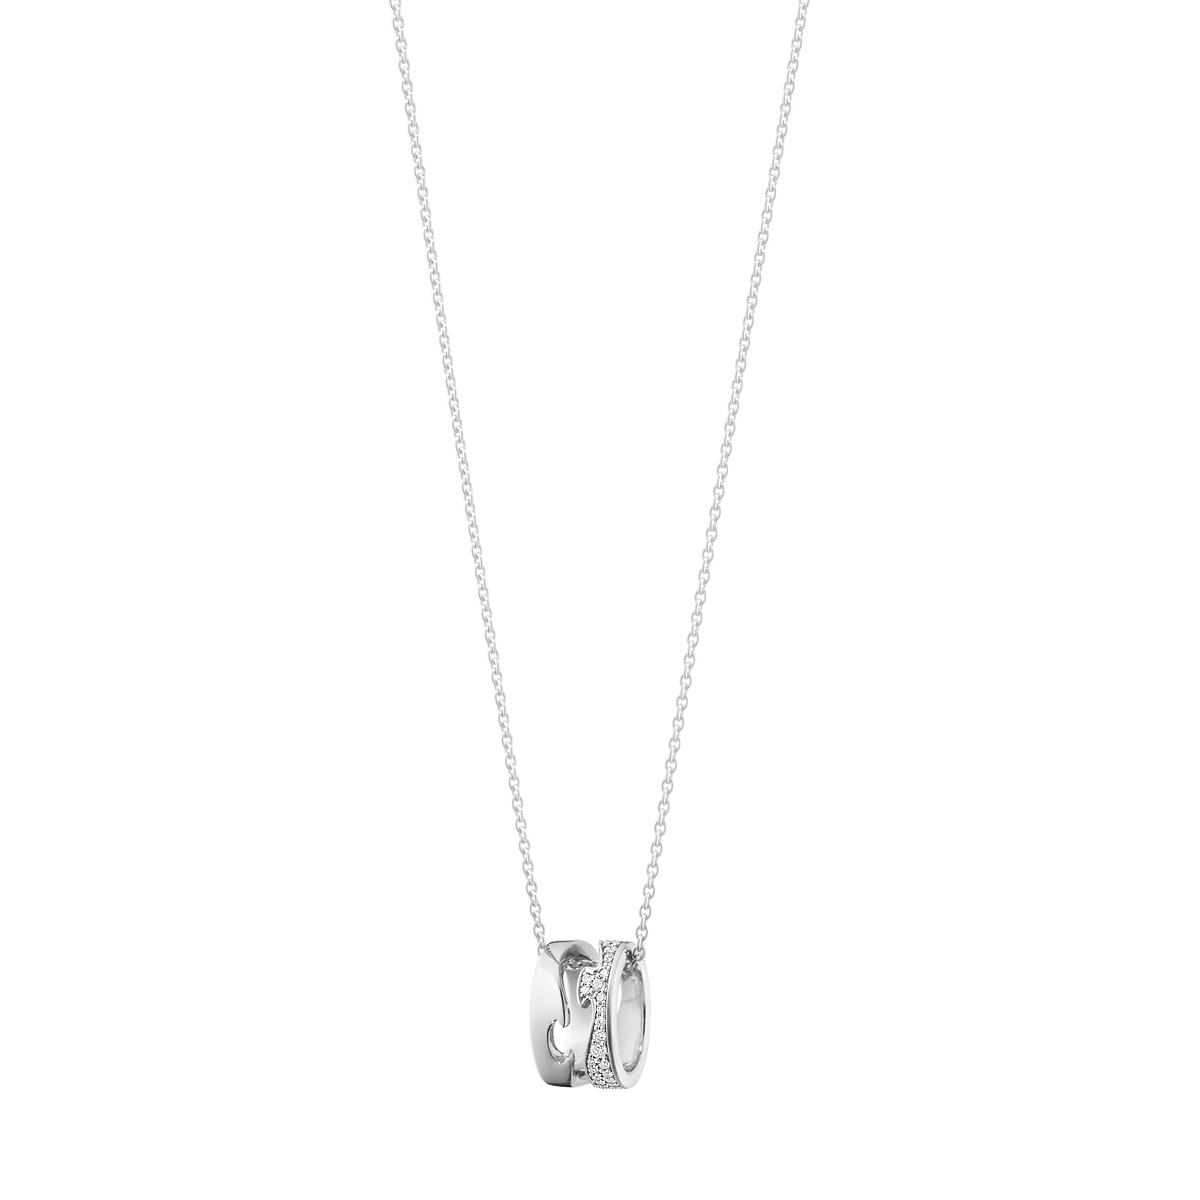 Fusion halskæde med vedhæng, diamanter - hvidguld fra Georg Jensen